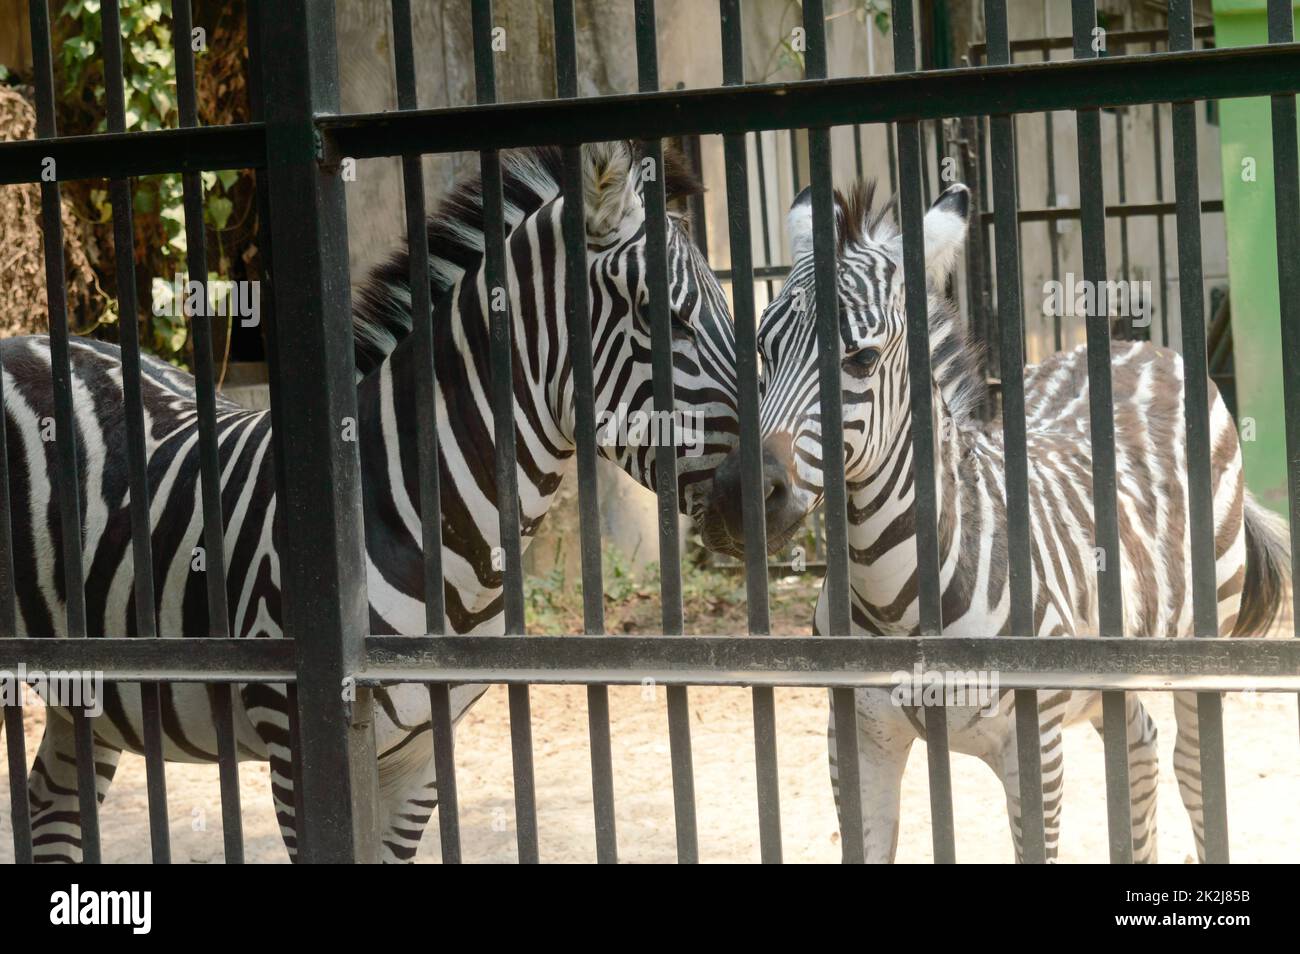 Animali in cattività. Strisce bianche zebra all'interno della gabbia in Alipur Zoological Garden, Kolkata, Bengala Occidentale, India Sud Asia. Foto Stock